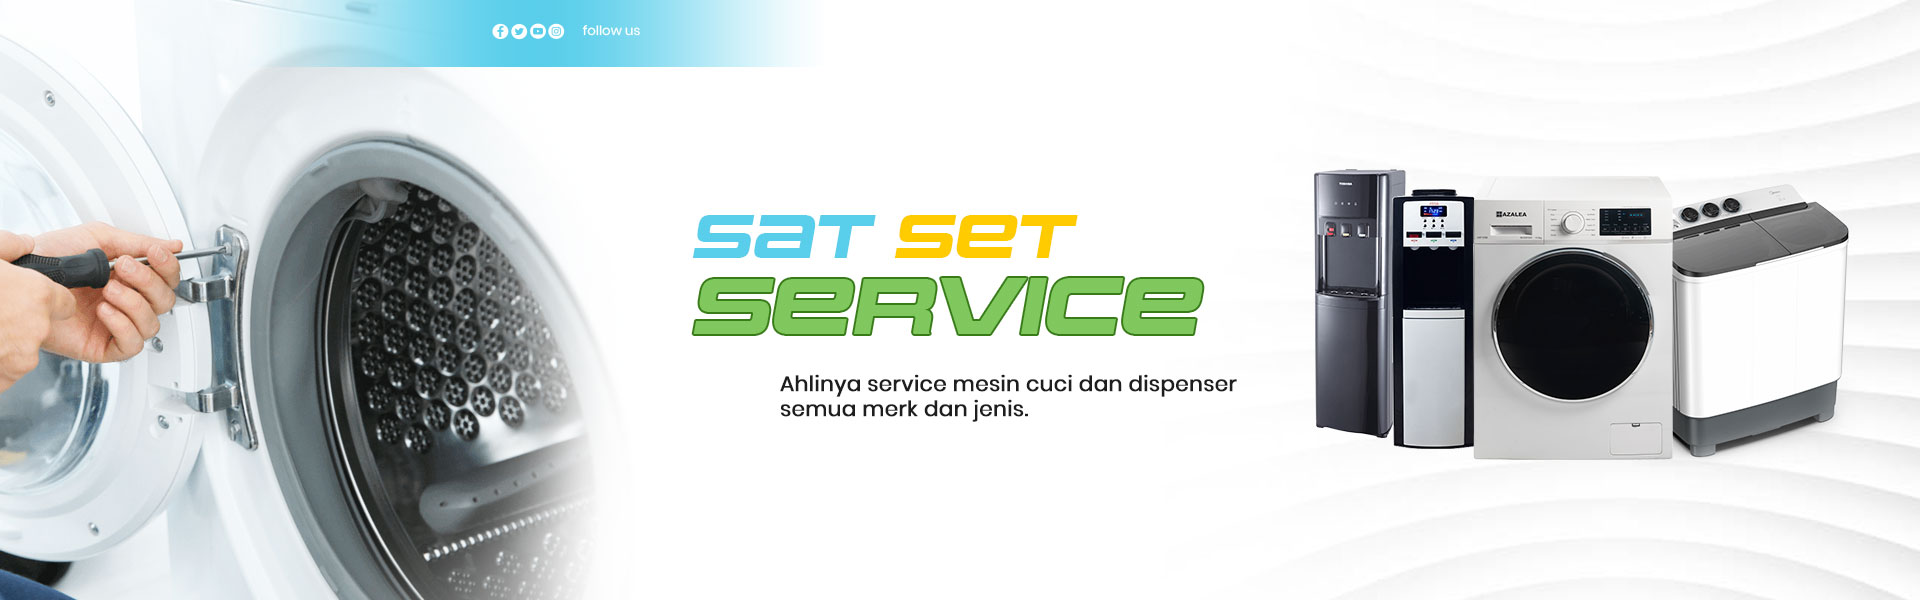 sat-set-service-title-mobile